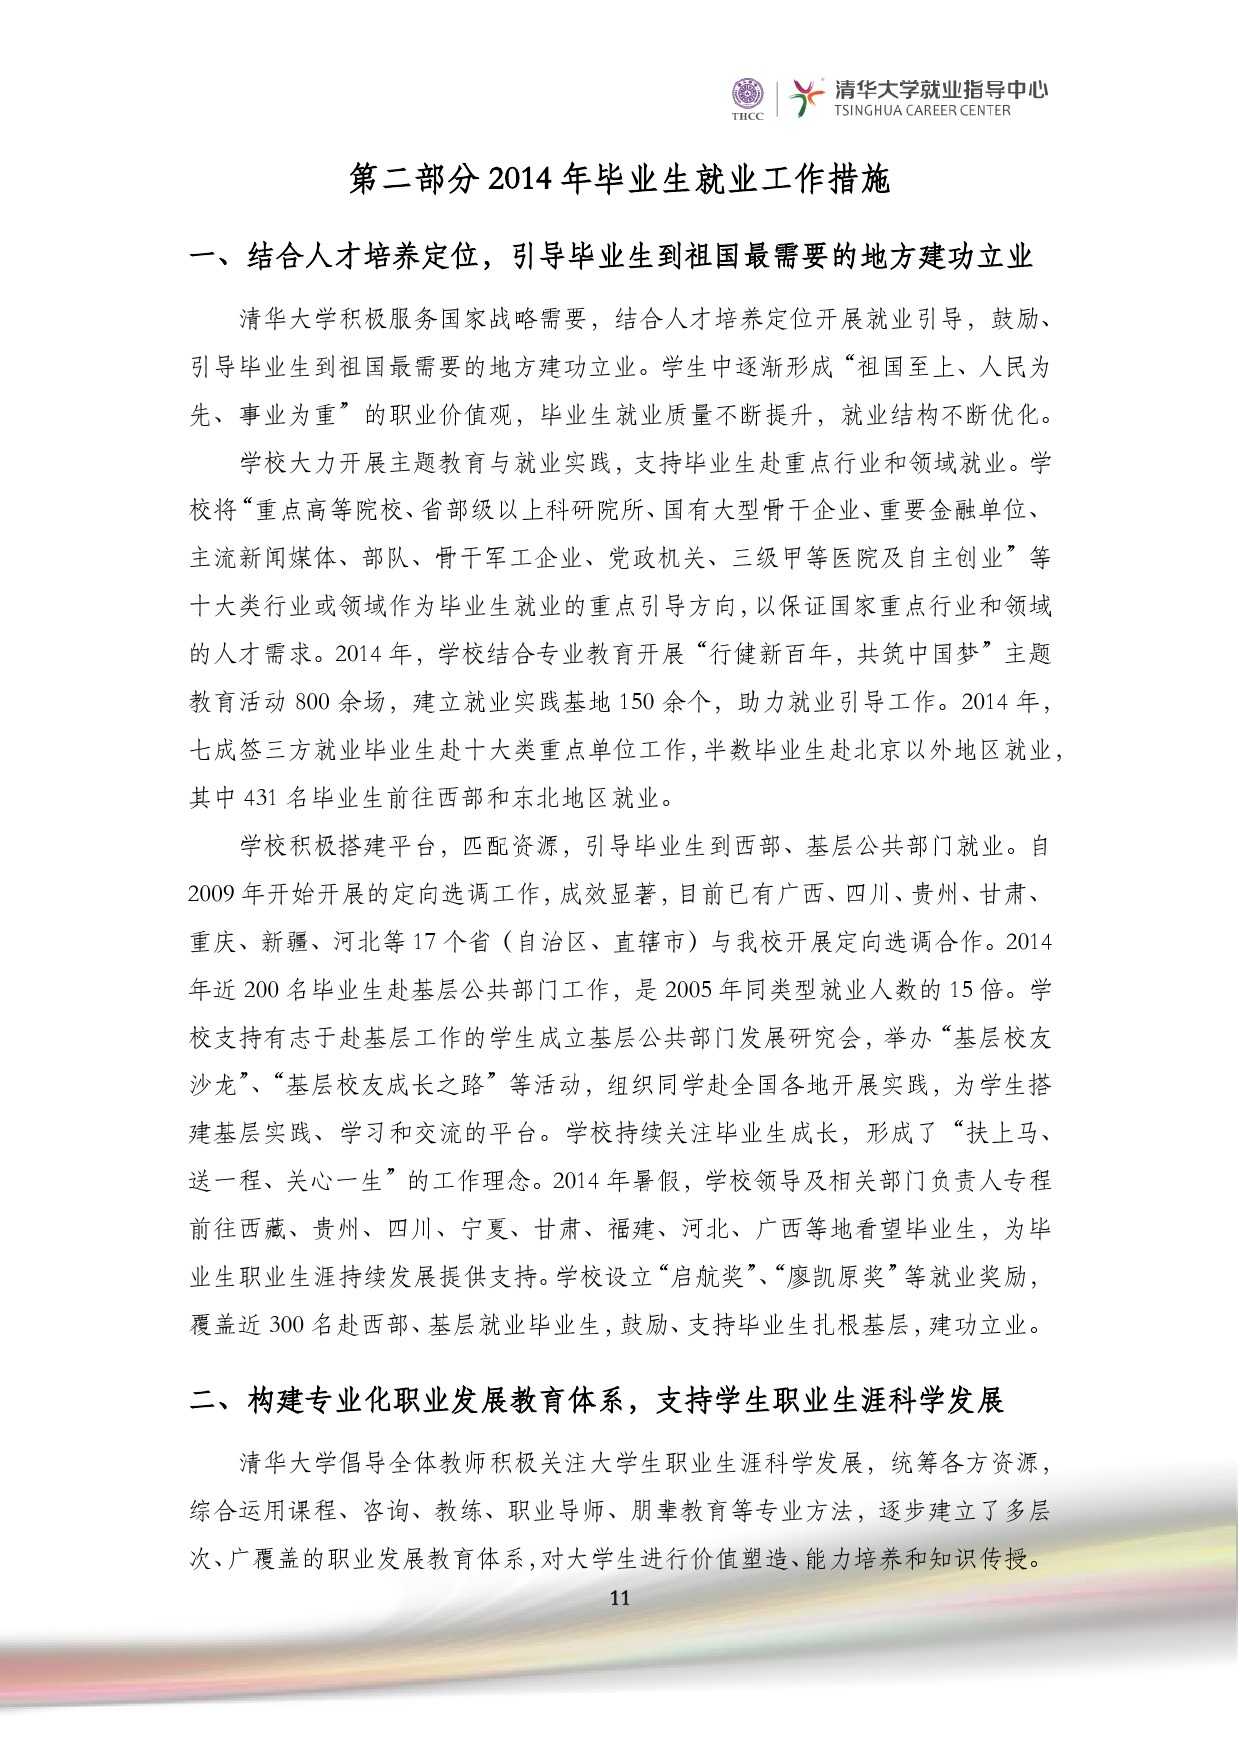 清華大學2014 年畢業生就業質量報告_000013